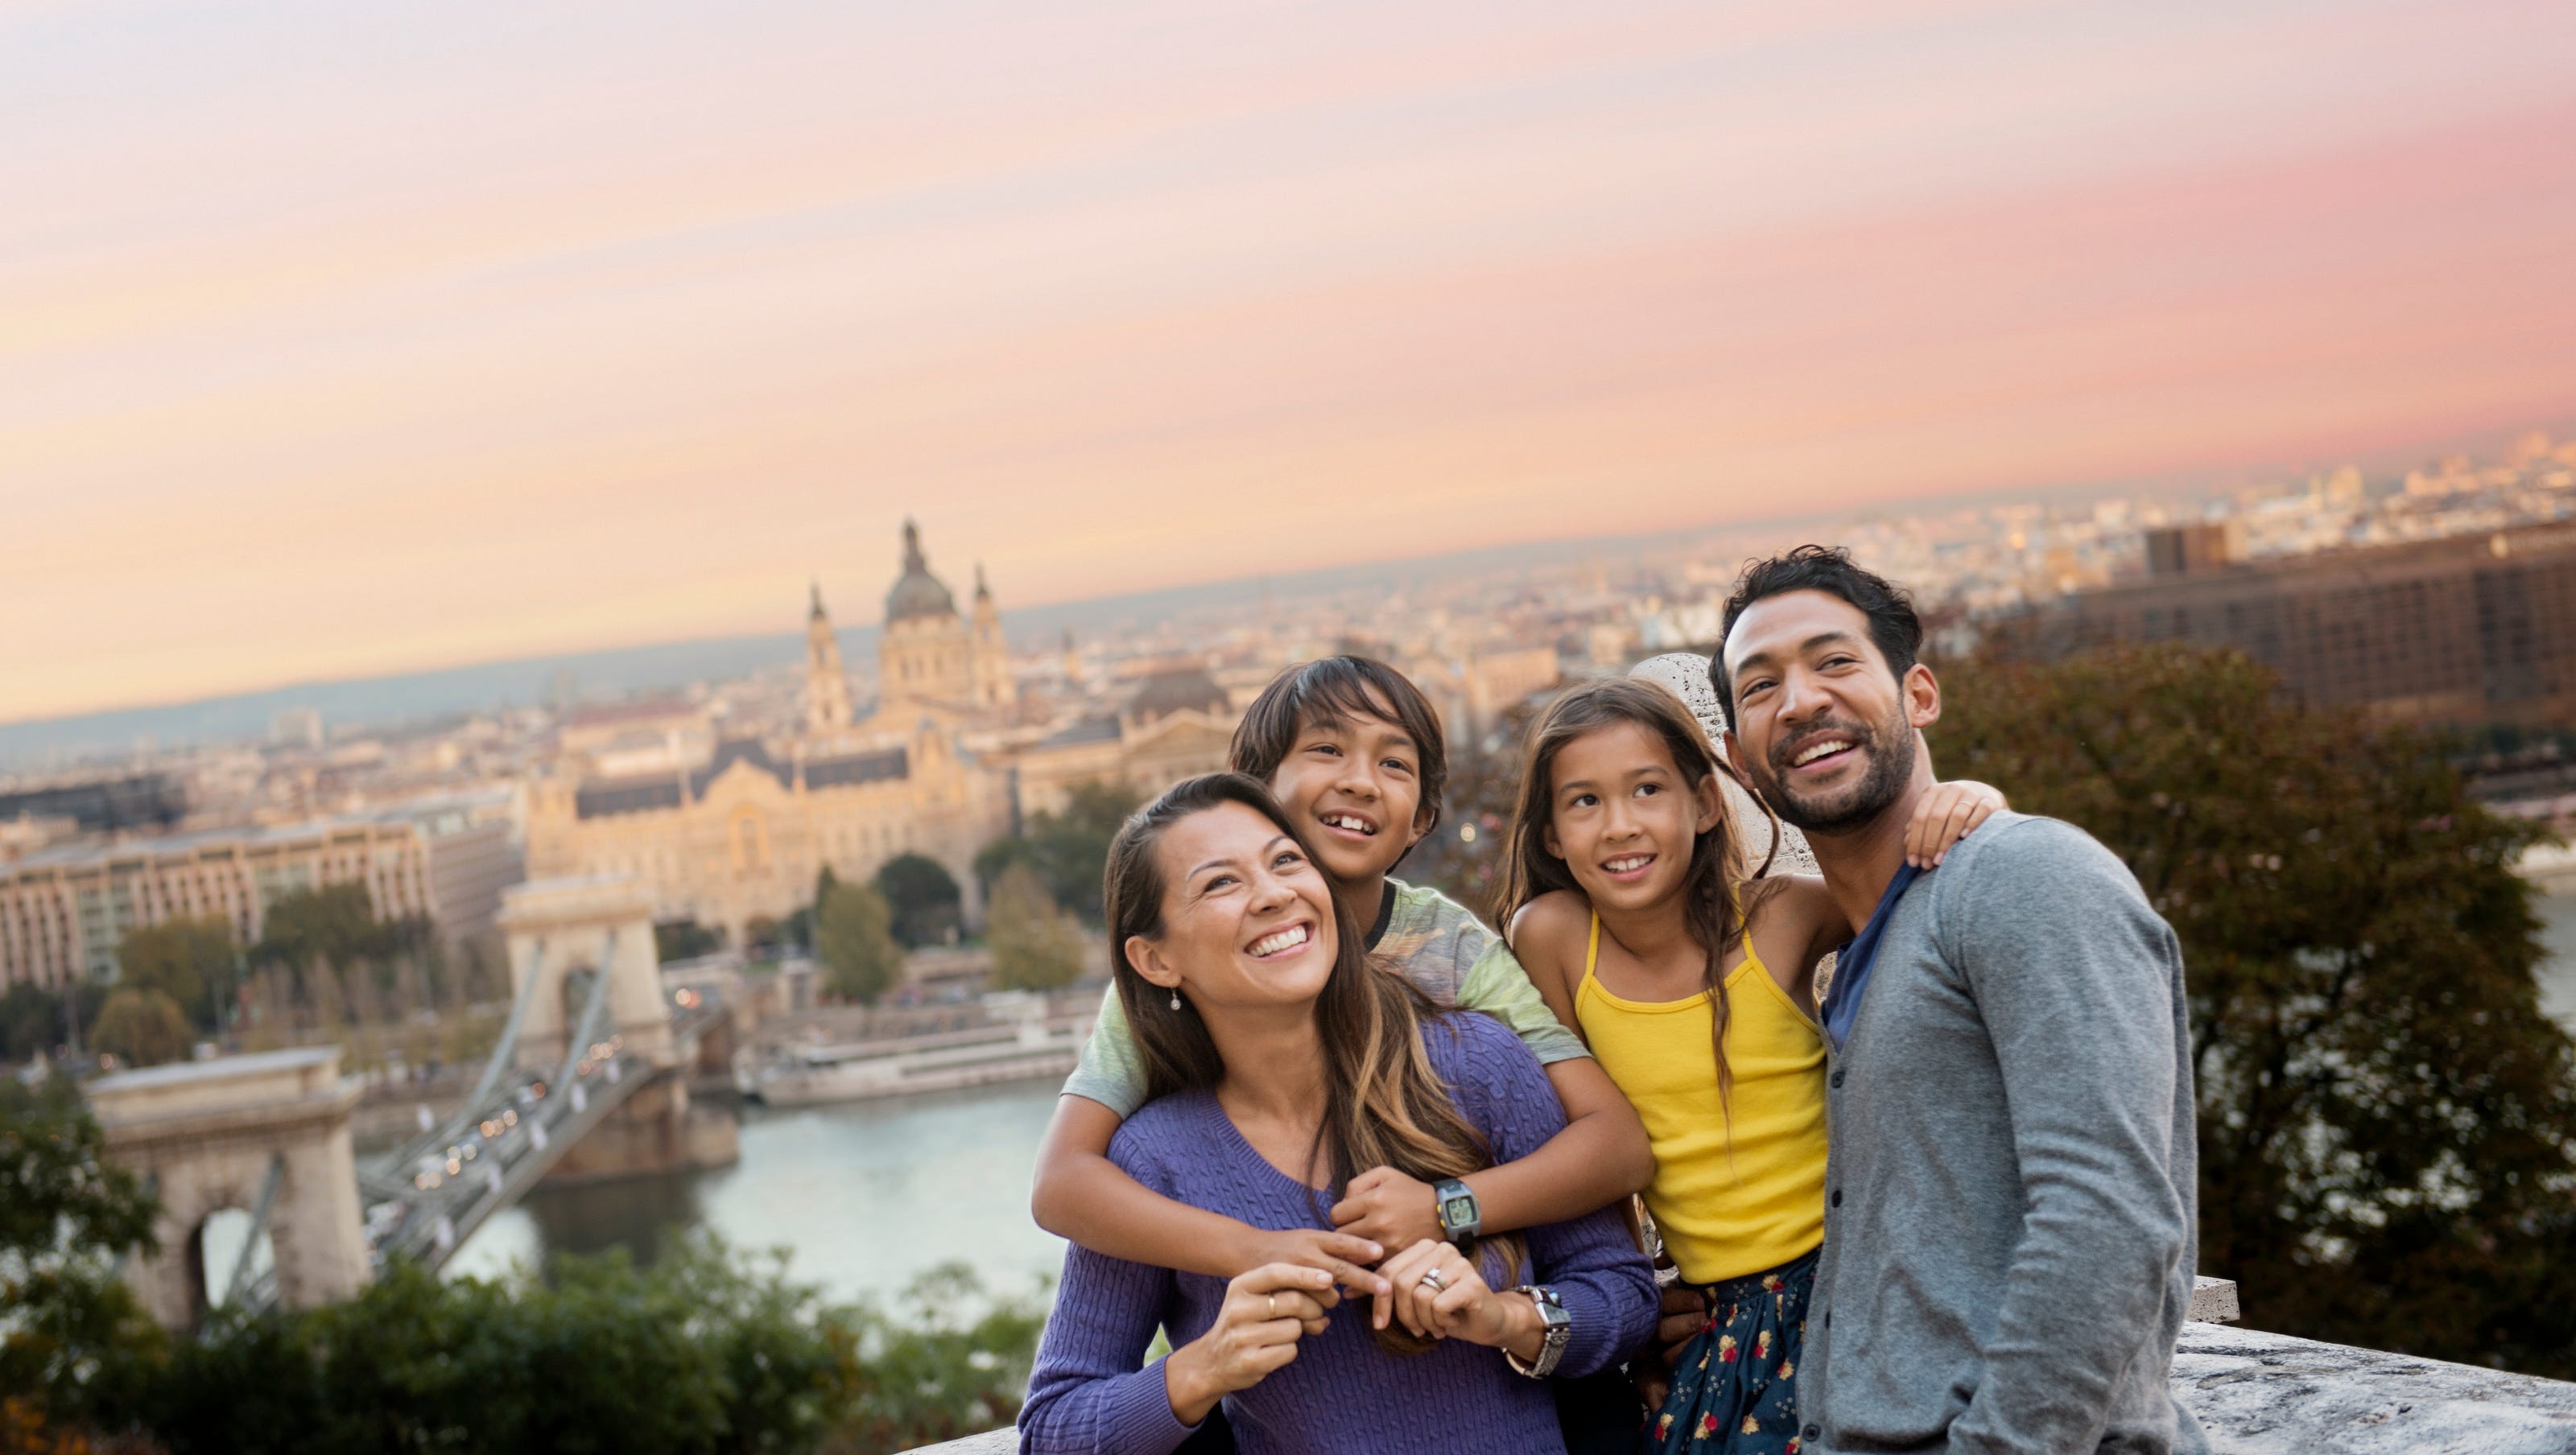 Отношения европейцев к европейцам. Путешествие с семьей. Семья путешествует. Счастливая семья в путешествии. Счастливые европейцы.